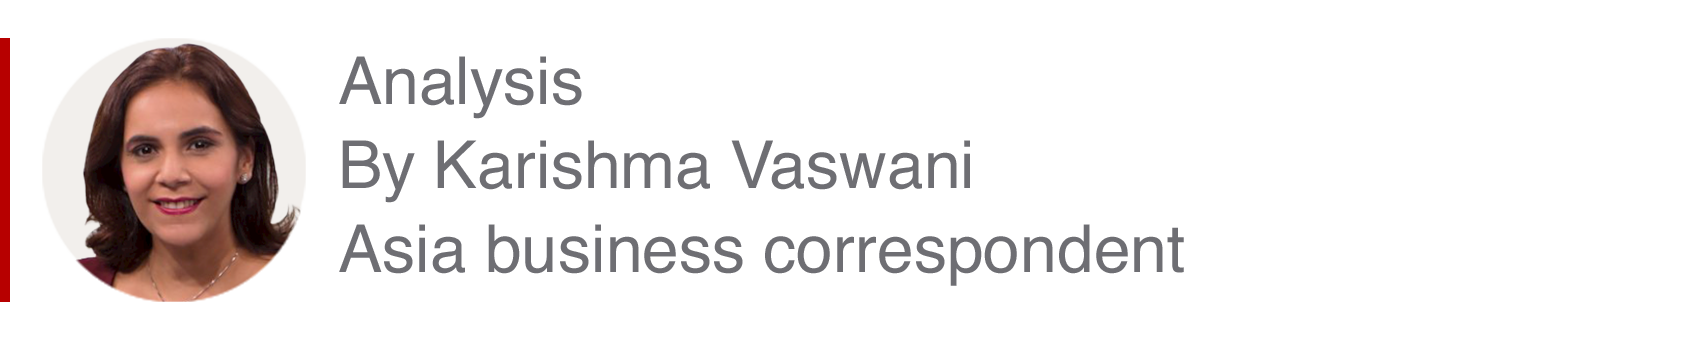 Analysis box by Karishma Vaswani, Asia business correspondent